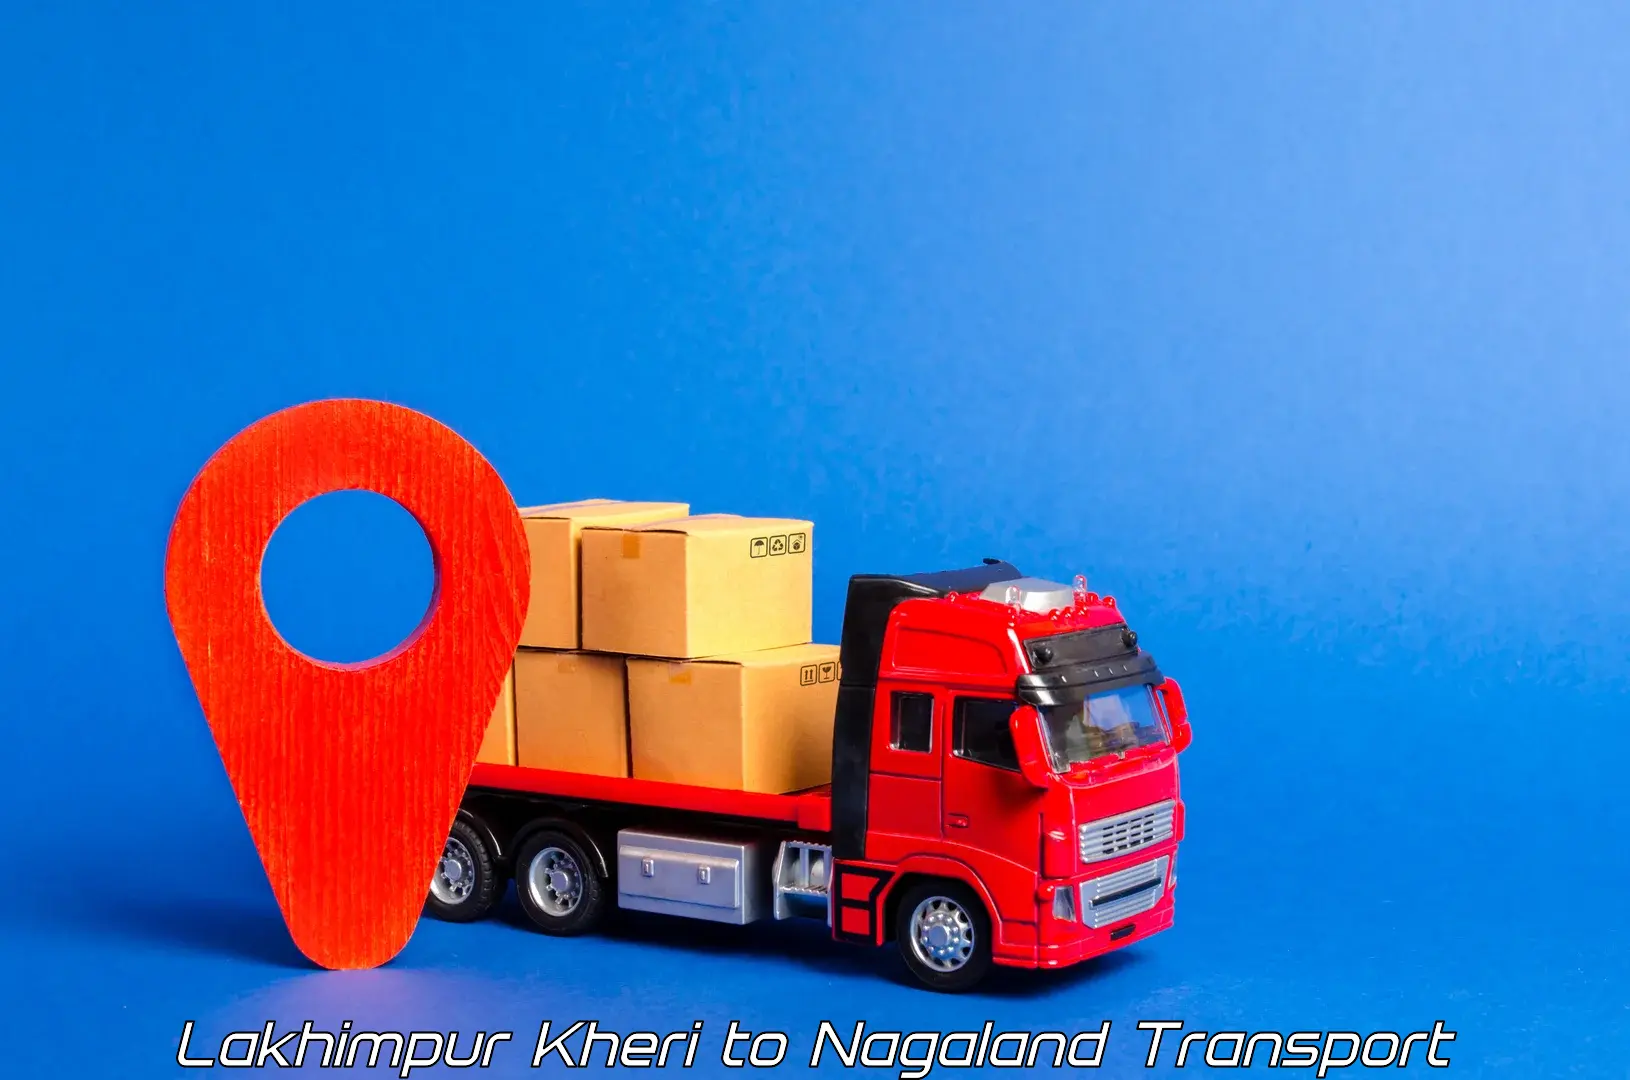 Truck transport companies in India Lakhimpur Kheri to Longleng